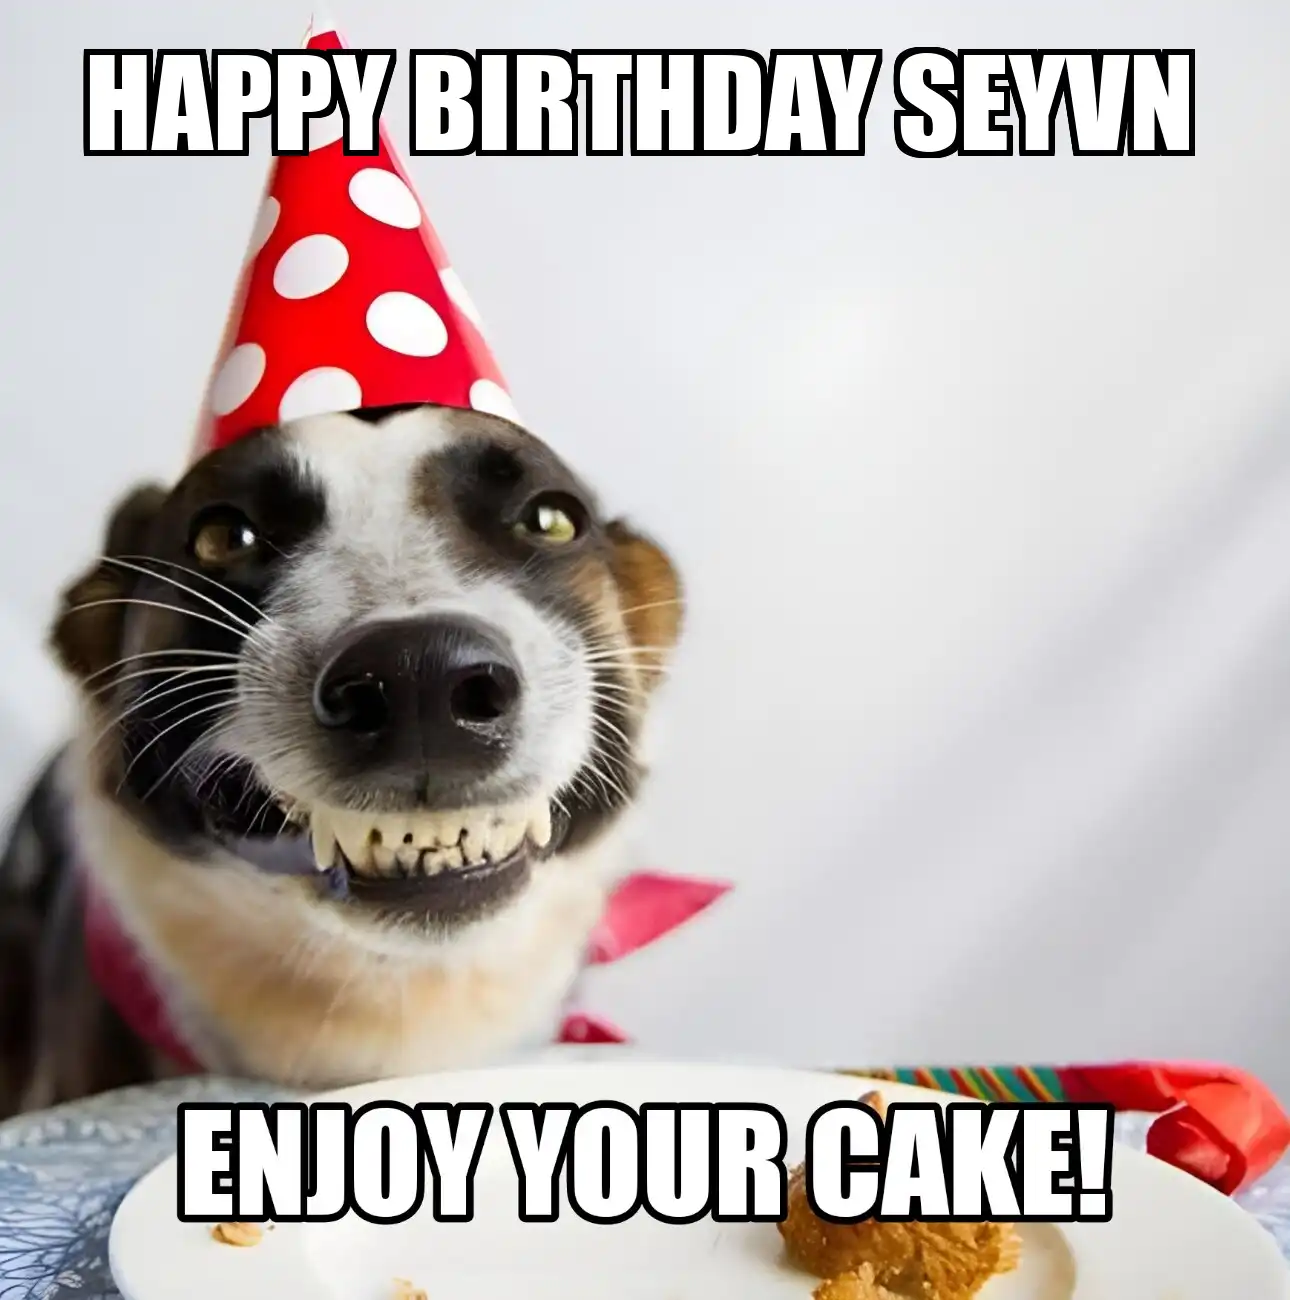 Happy Birthday Seyvn Enjoy Your Cake Dog Meme